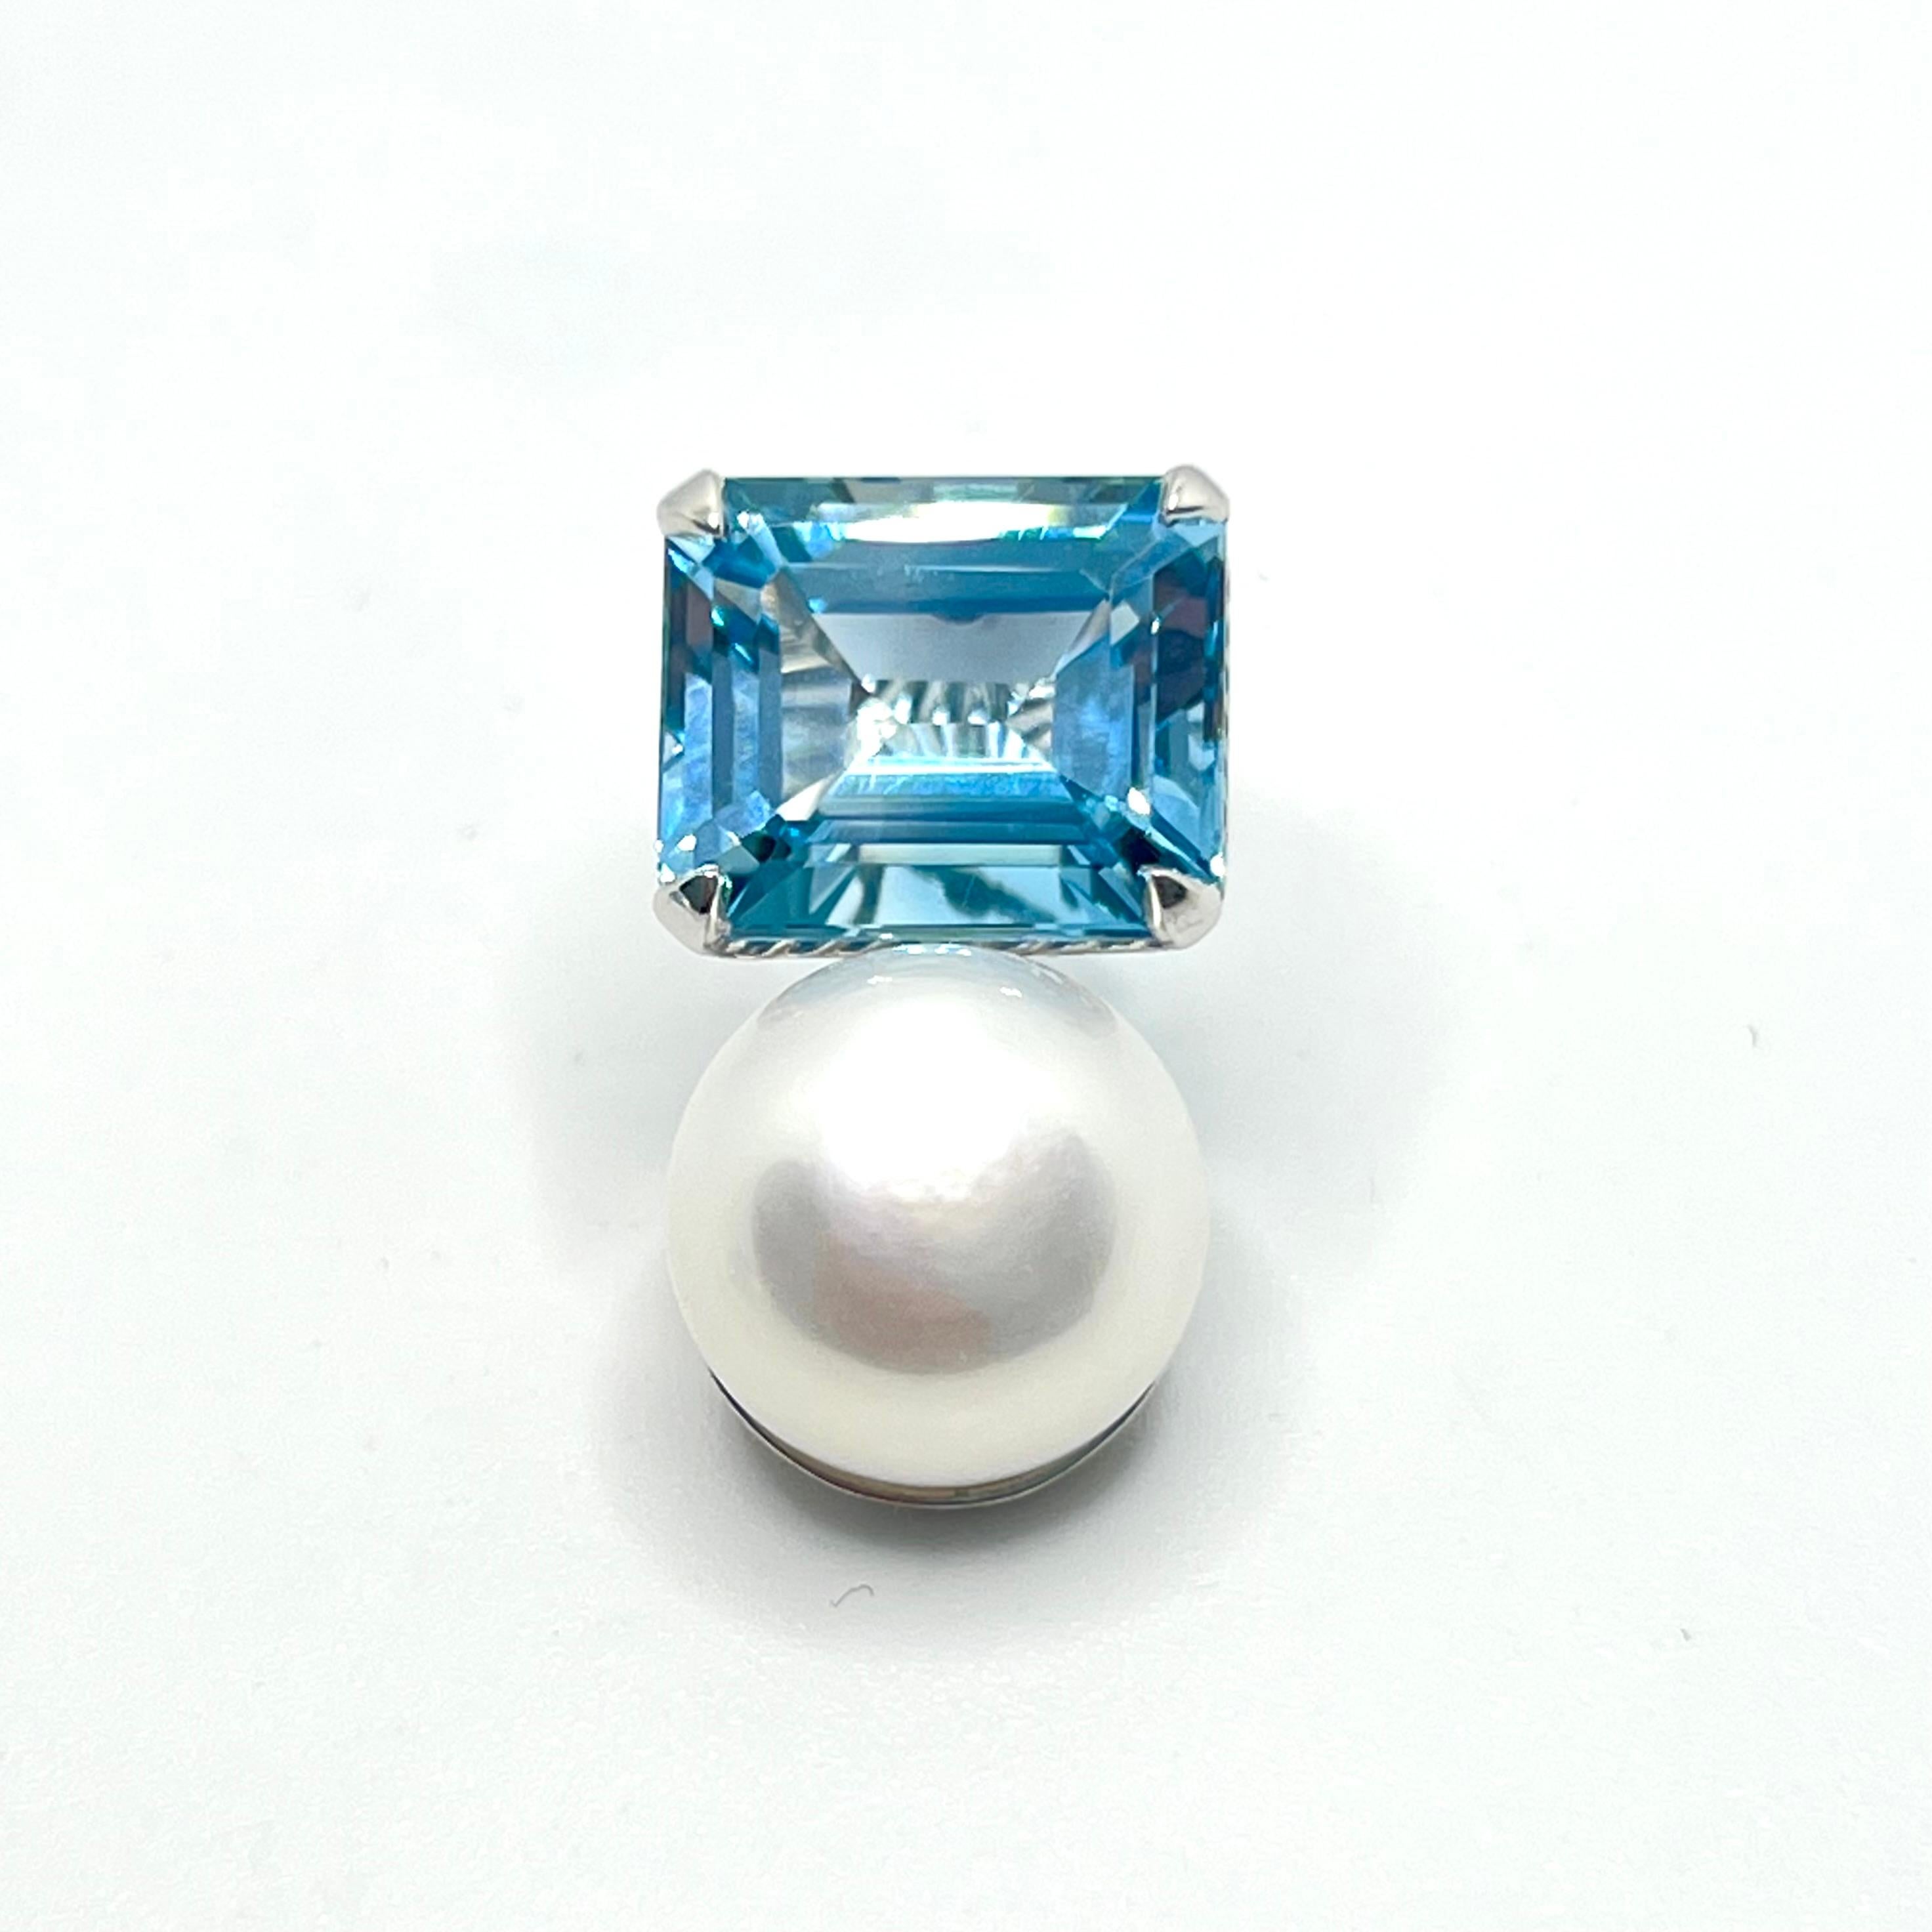 Atemberaubende Bijoux Num Emerald-cut Blue Topaz & Süßwasserperlen-Ohrringe. 

Die Ohrringe bestehen aus 2 wunderschönen himmelblauen Topasen im Smaragdschliff und 2 glänzenden 12 mm großen Süßwasser-Zuchtperlen, die in platin-rhodiniertem